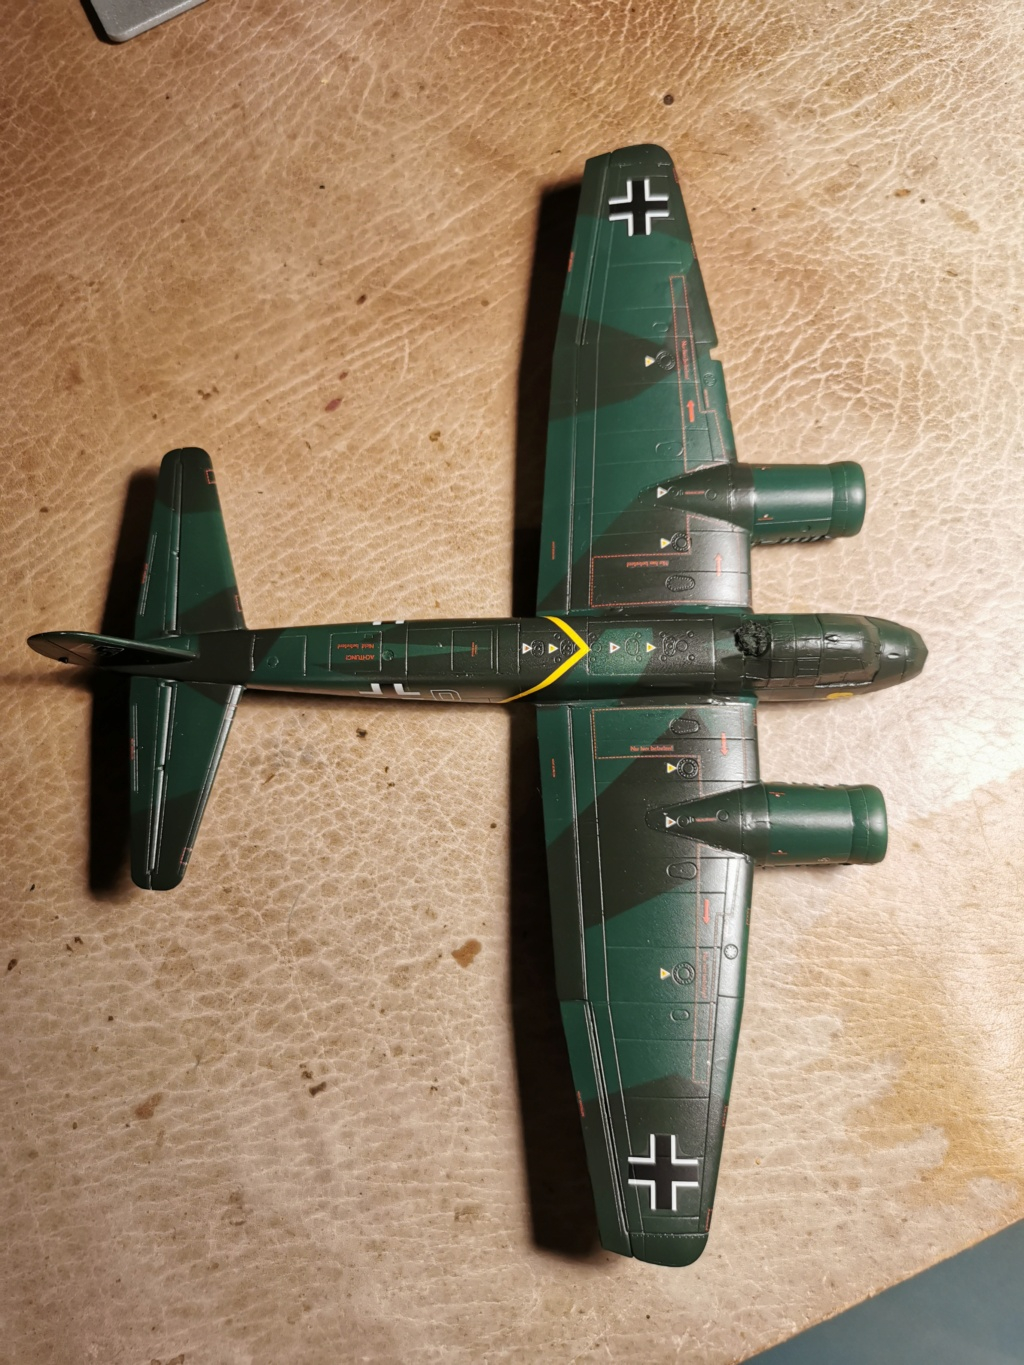 [Revell] 1/72 - Chronique d'un débutant Part 5 - Junkers Ju 88  (ju88) Img_2069